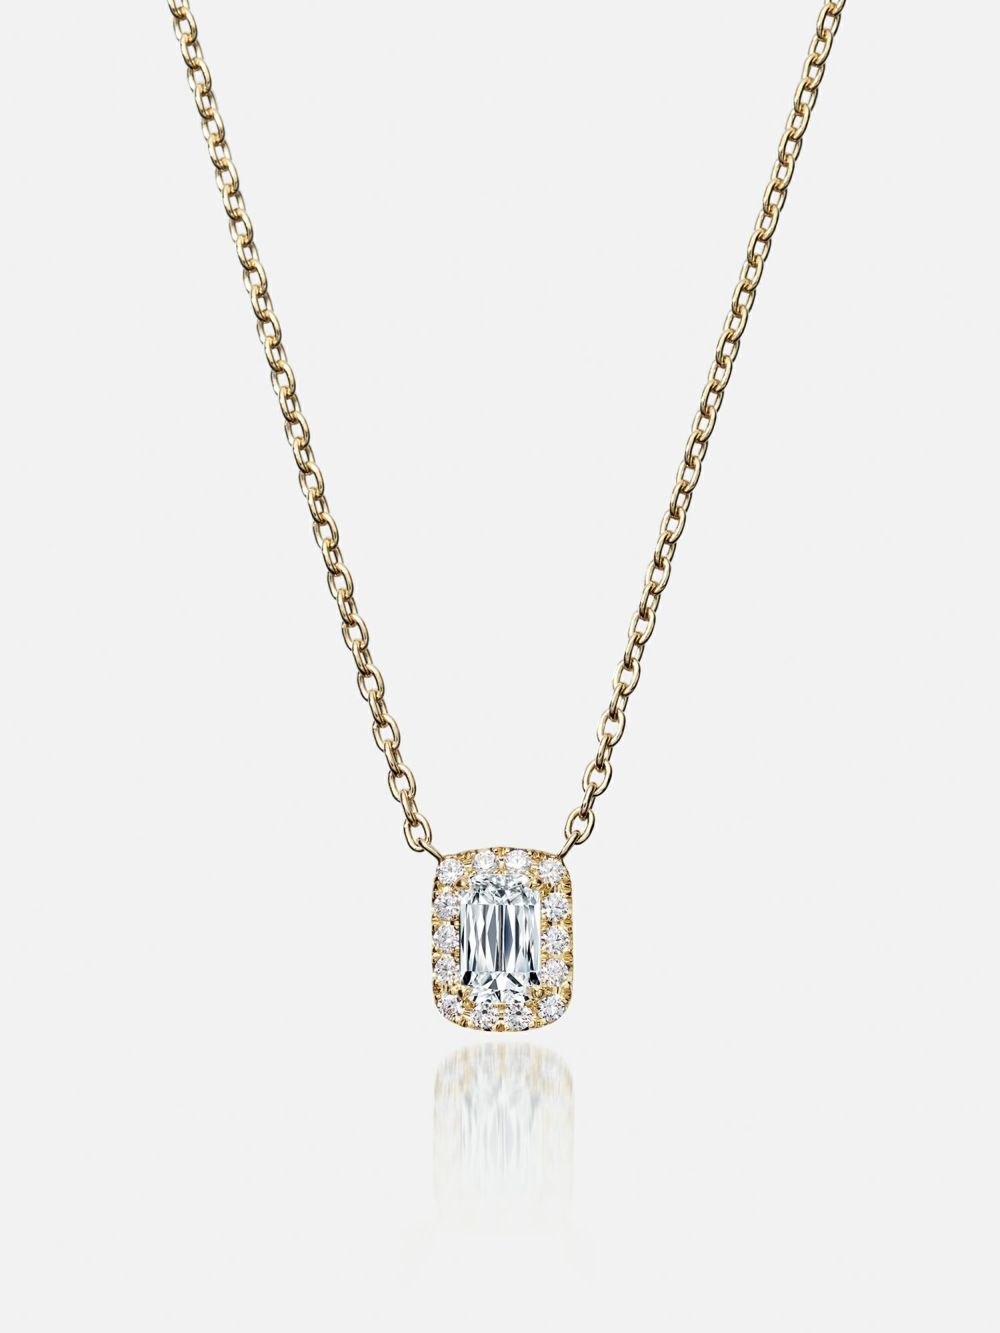 ネックレス〈18KYG アショカダイヤモンド 0.31ct〉 |ネックレス・ブレスレット | WAKOオンラインストア | 銀座・和光